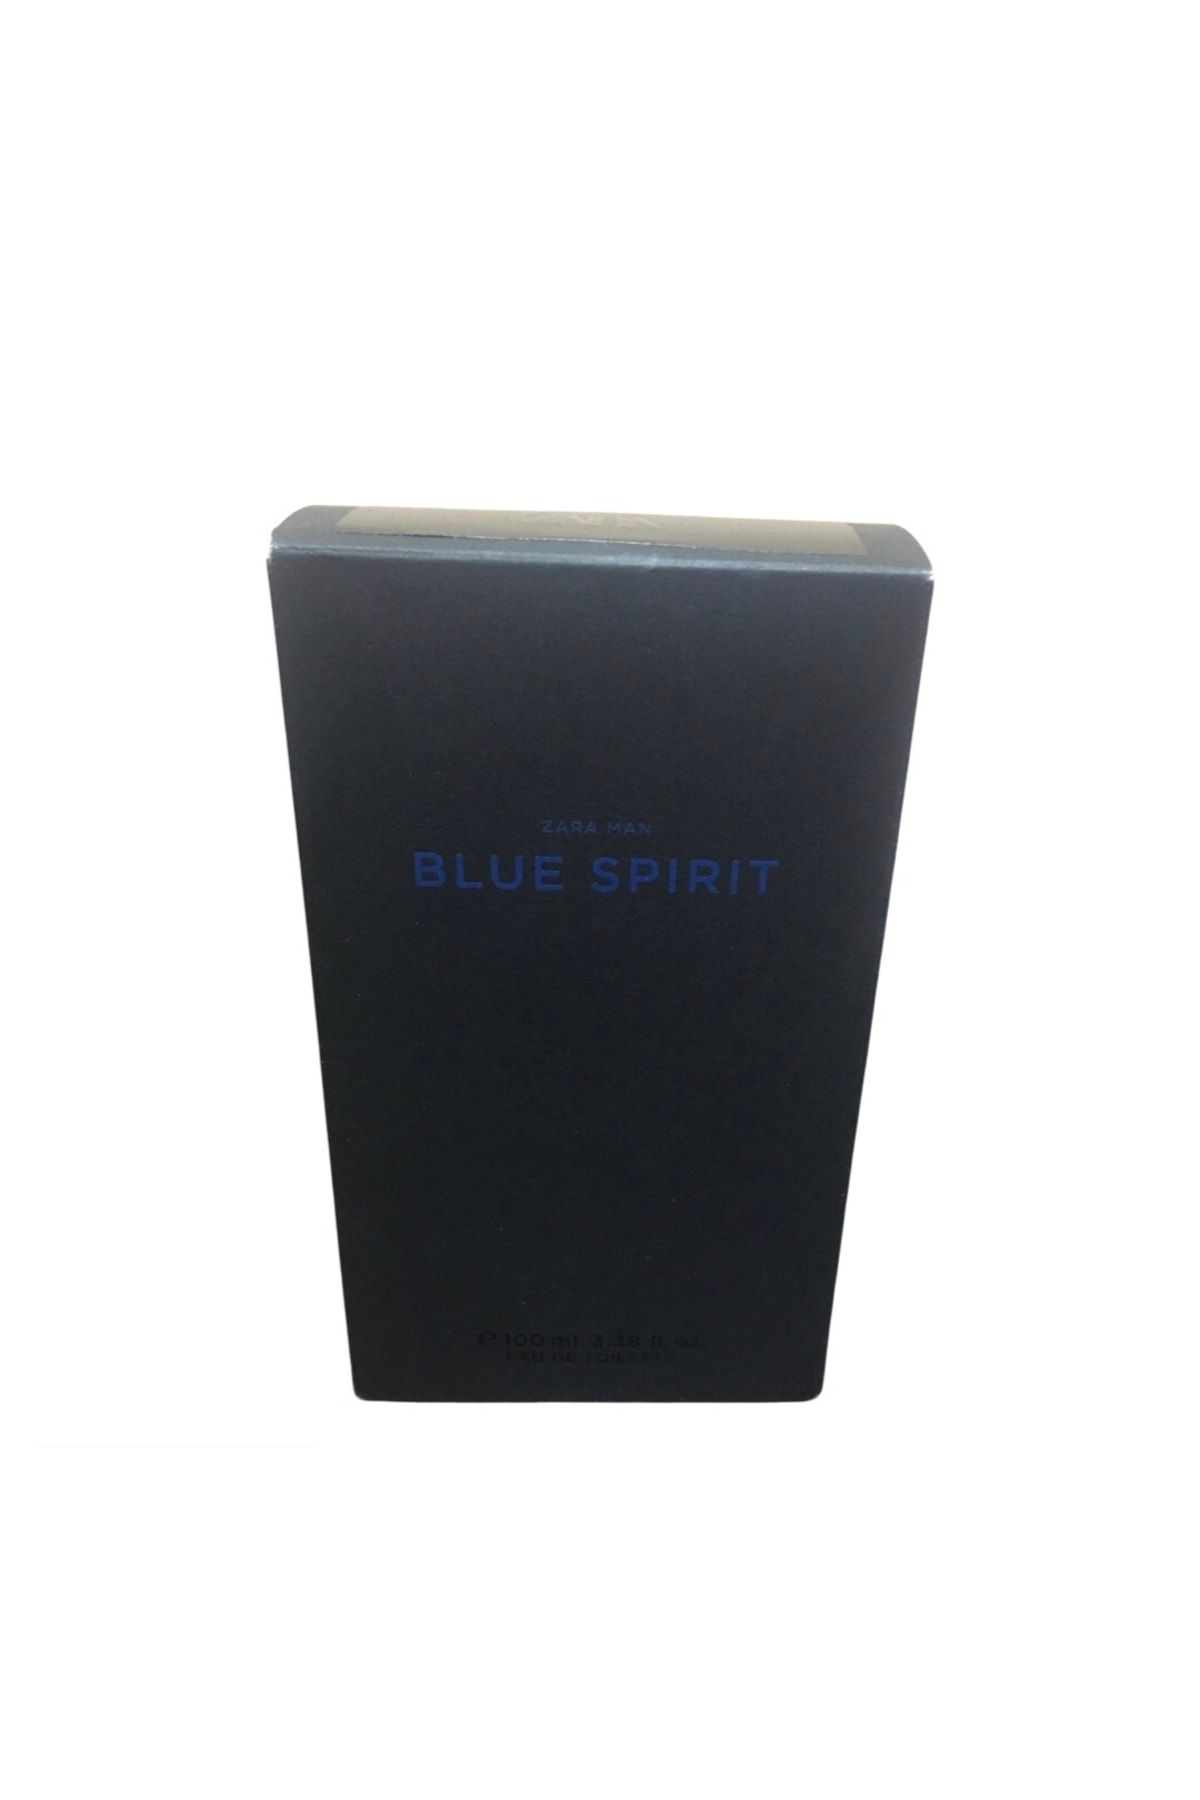 Zara Man Blue Spirit ادوتویلت 100 Ml (3.38 Fl. Oz).